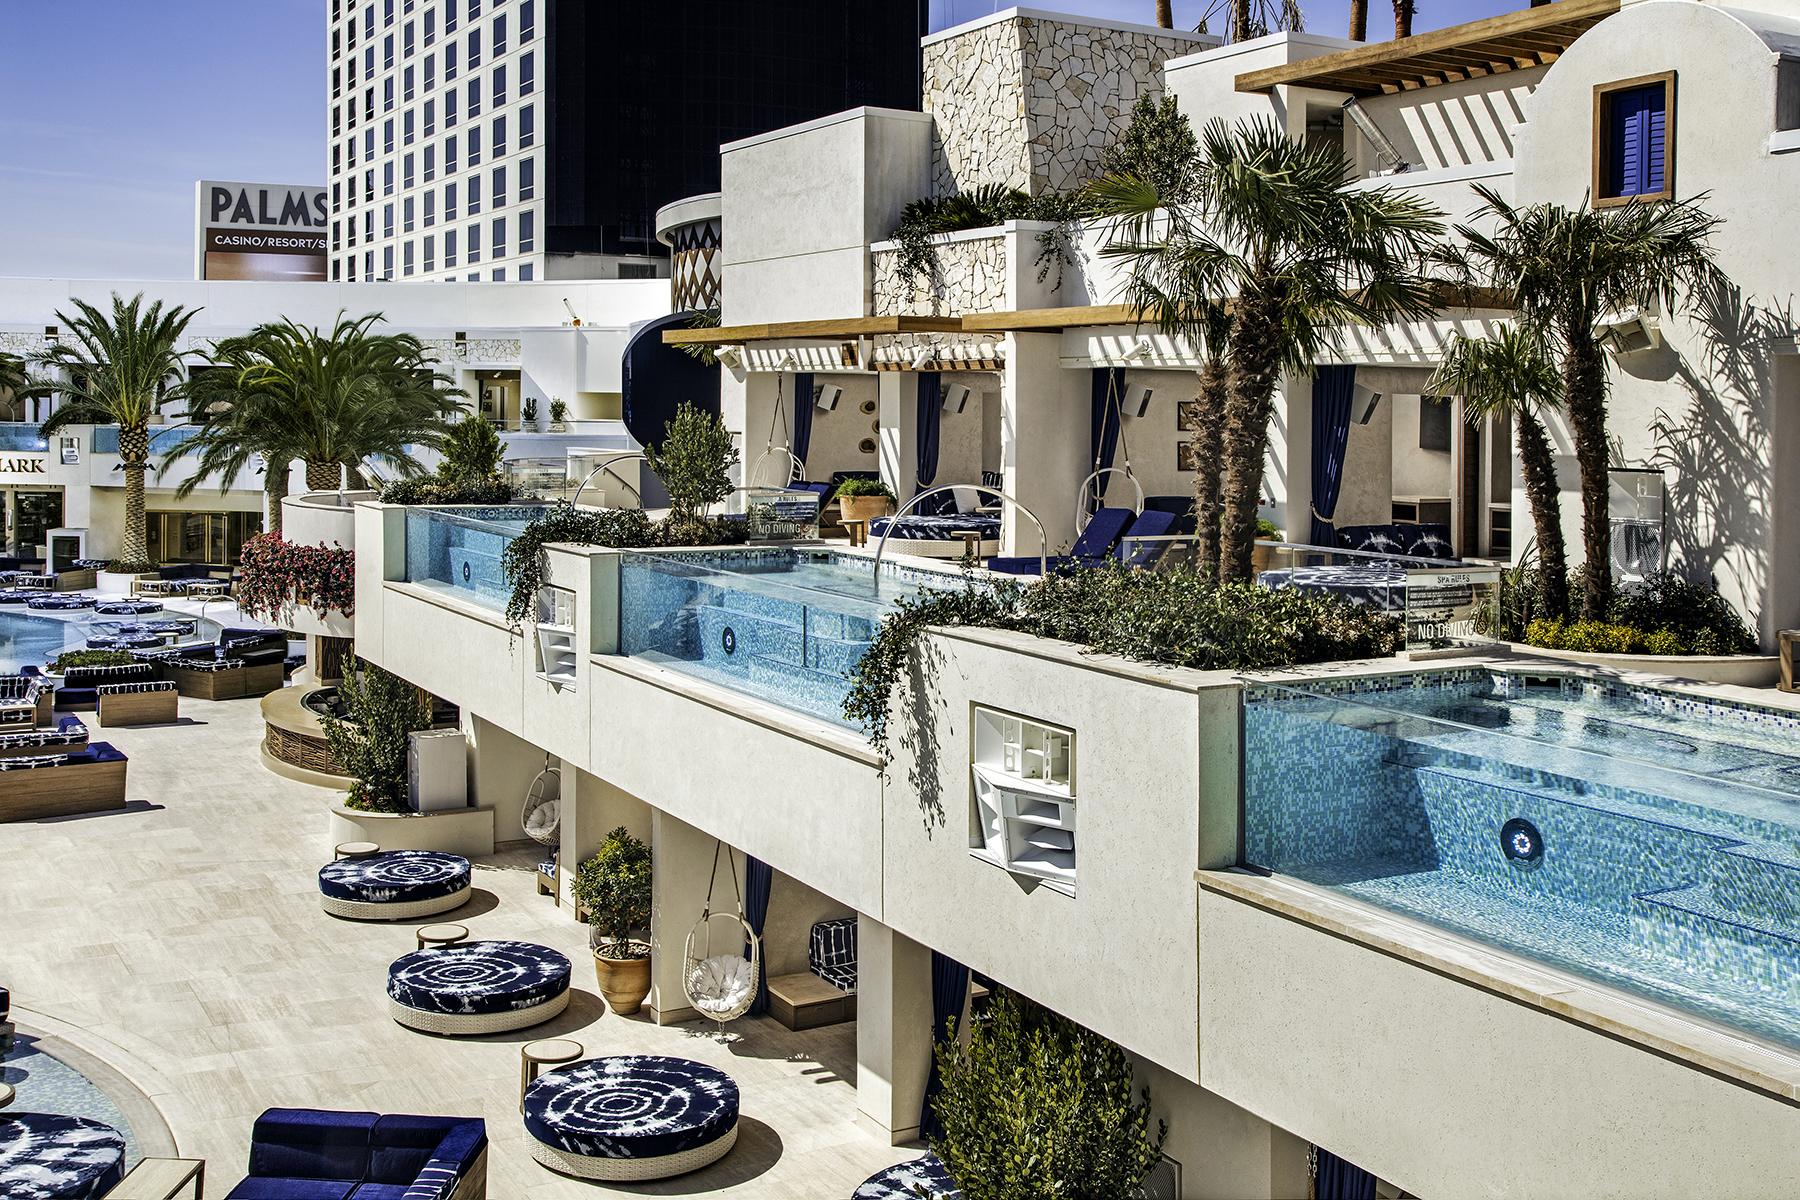 10 Best Pools In Las Vegas